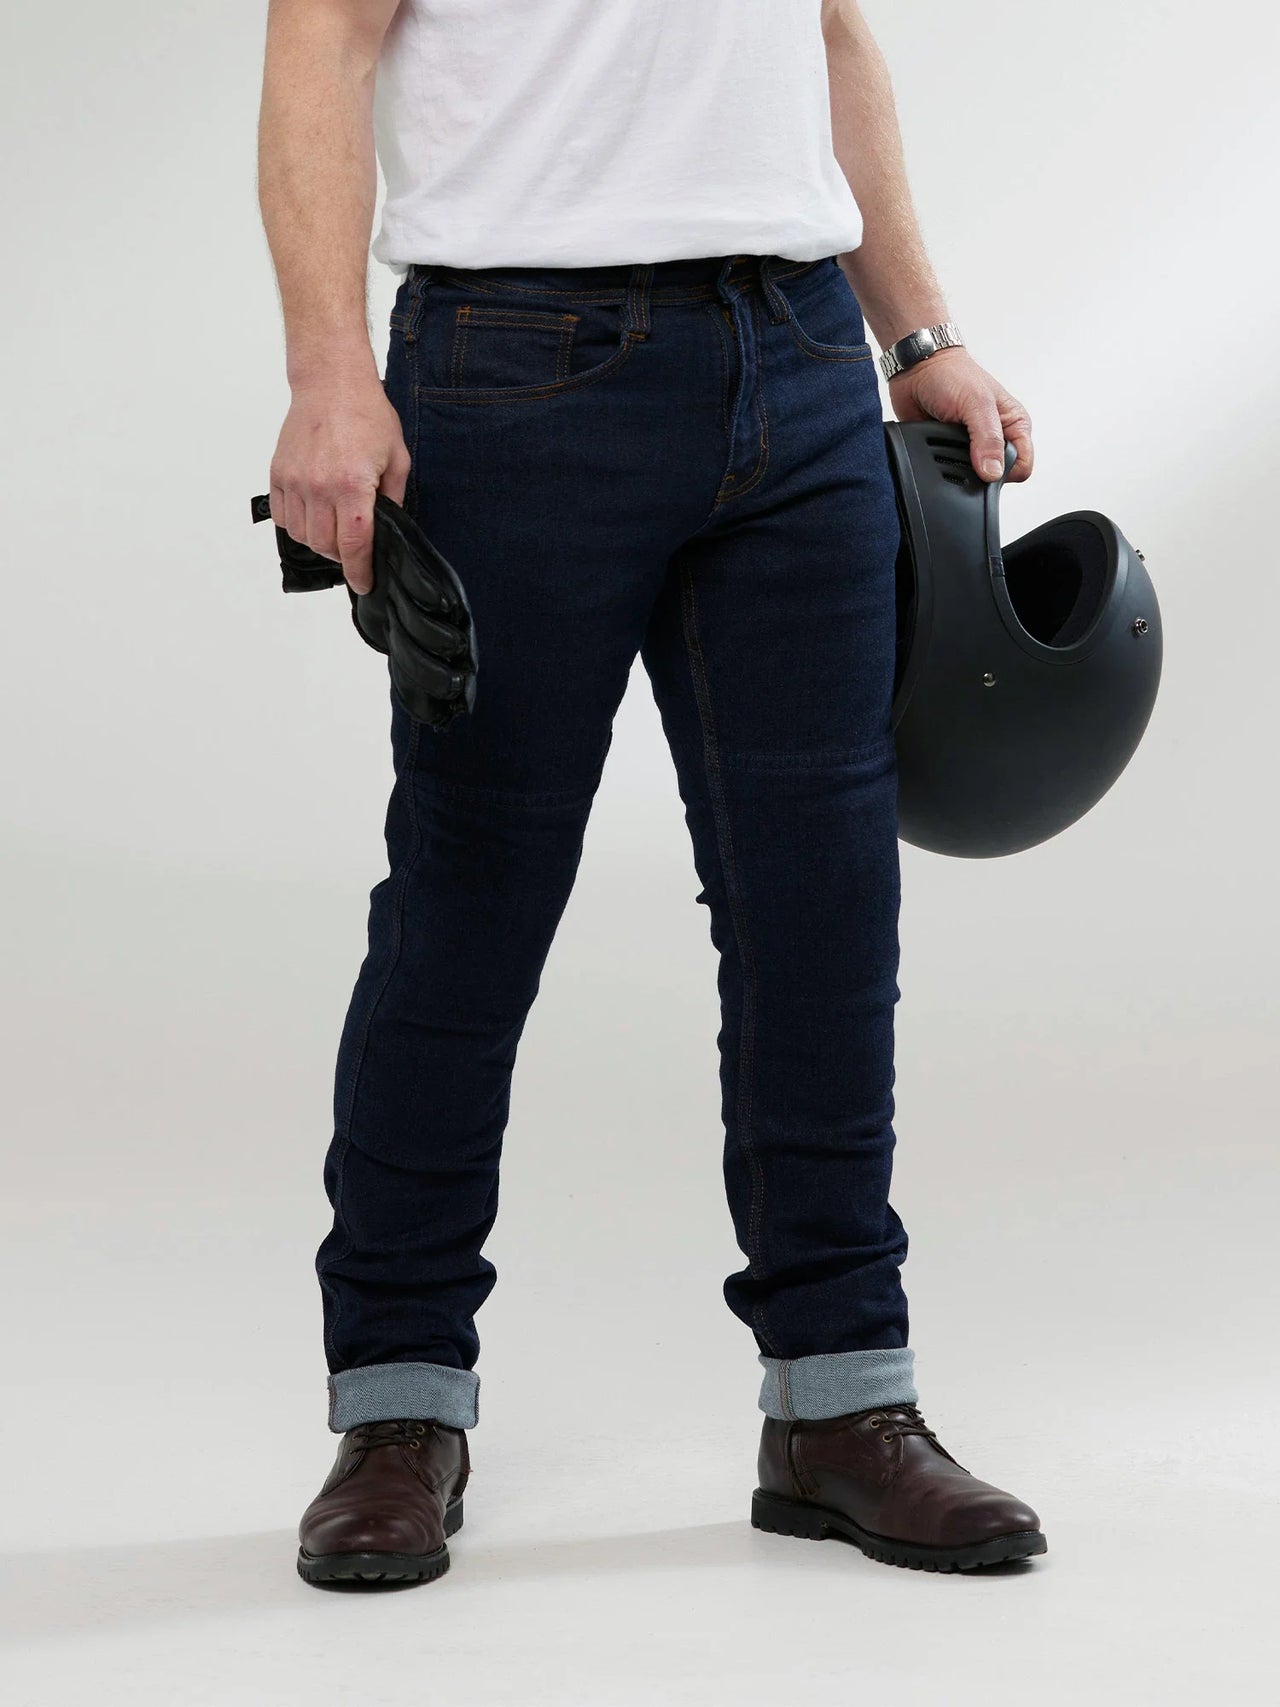 Jet Motorcycle Wear Pantalon de moto textile CE blindé, pantalon  imperméable pour homme, Economy Black : : Auto et Moto